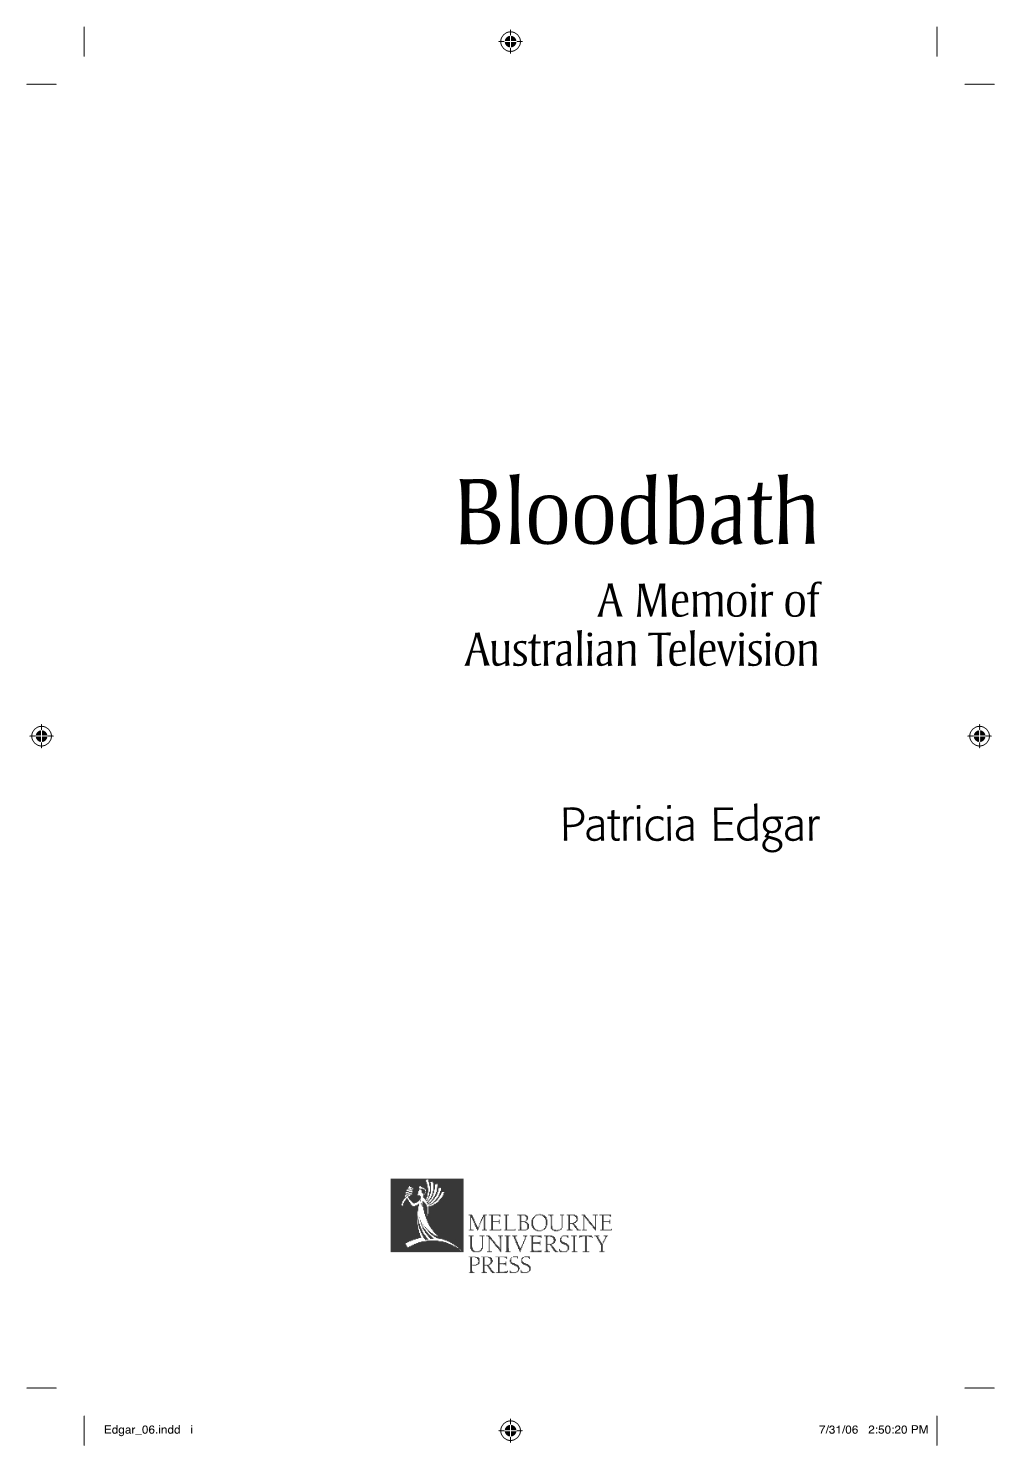 Bloodbath a Memoir of Australian Television